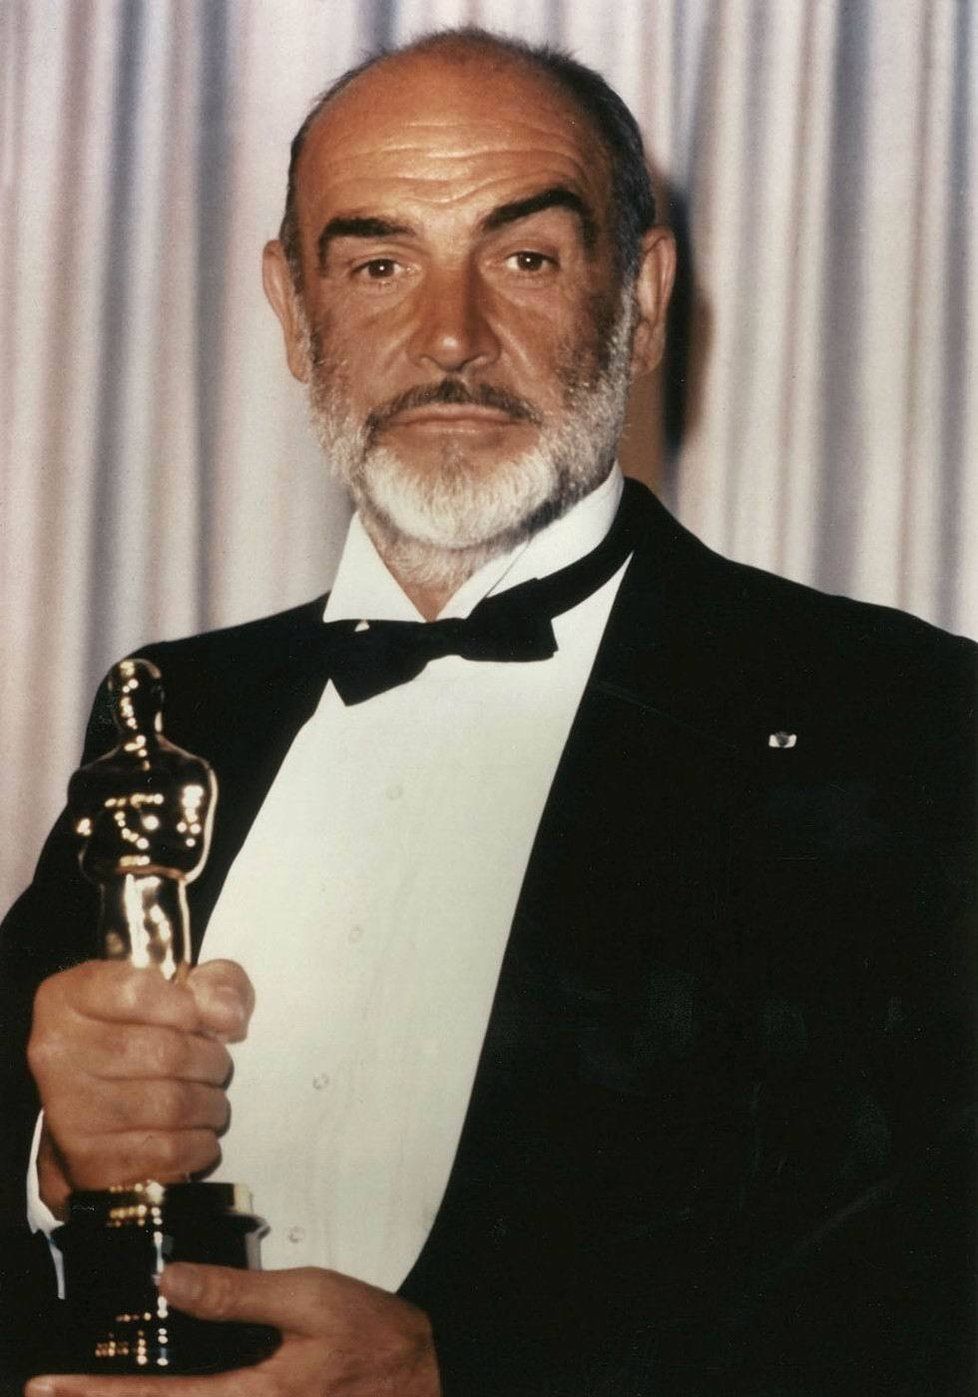 Herec Sean Connery je pro samostatnost.